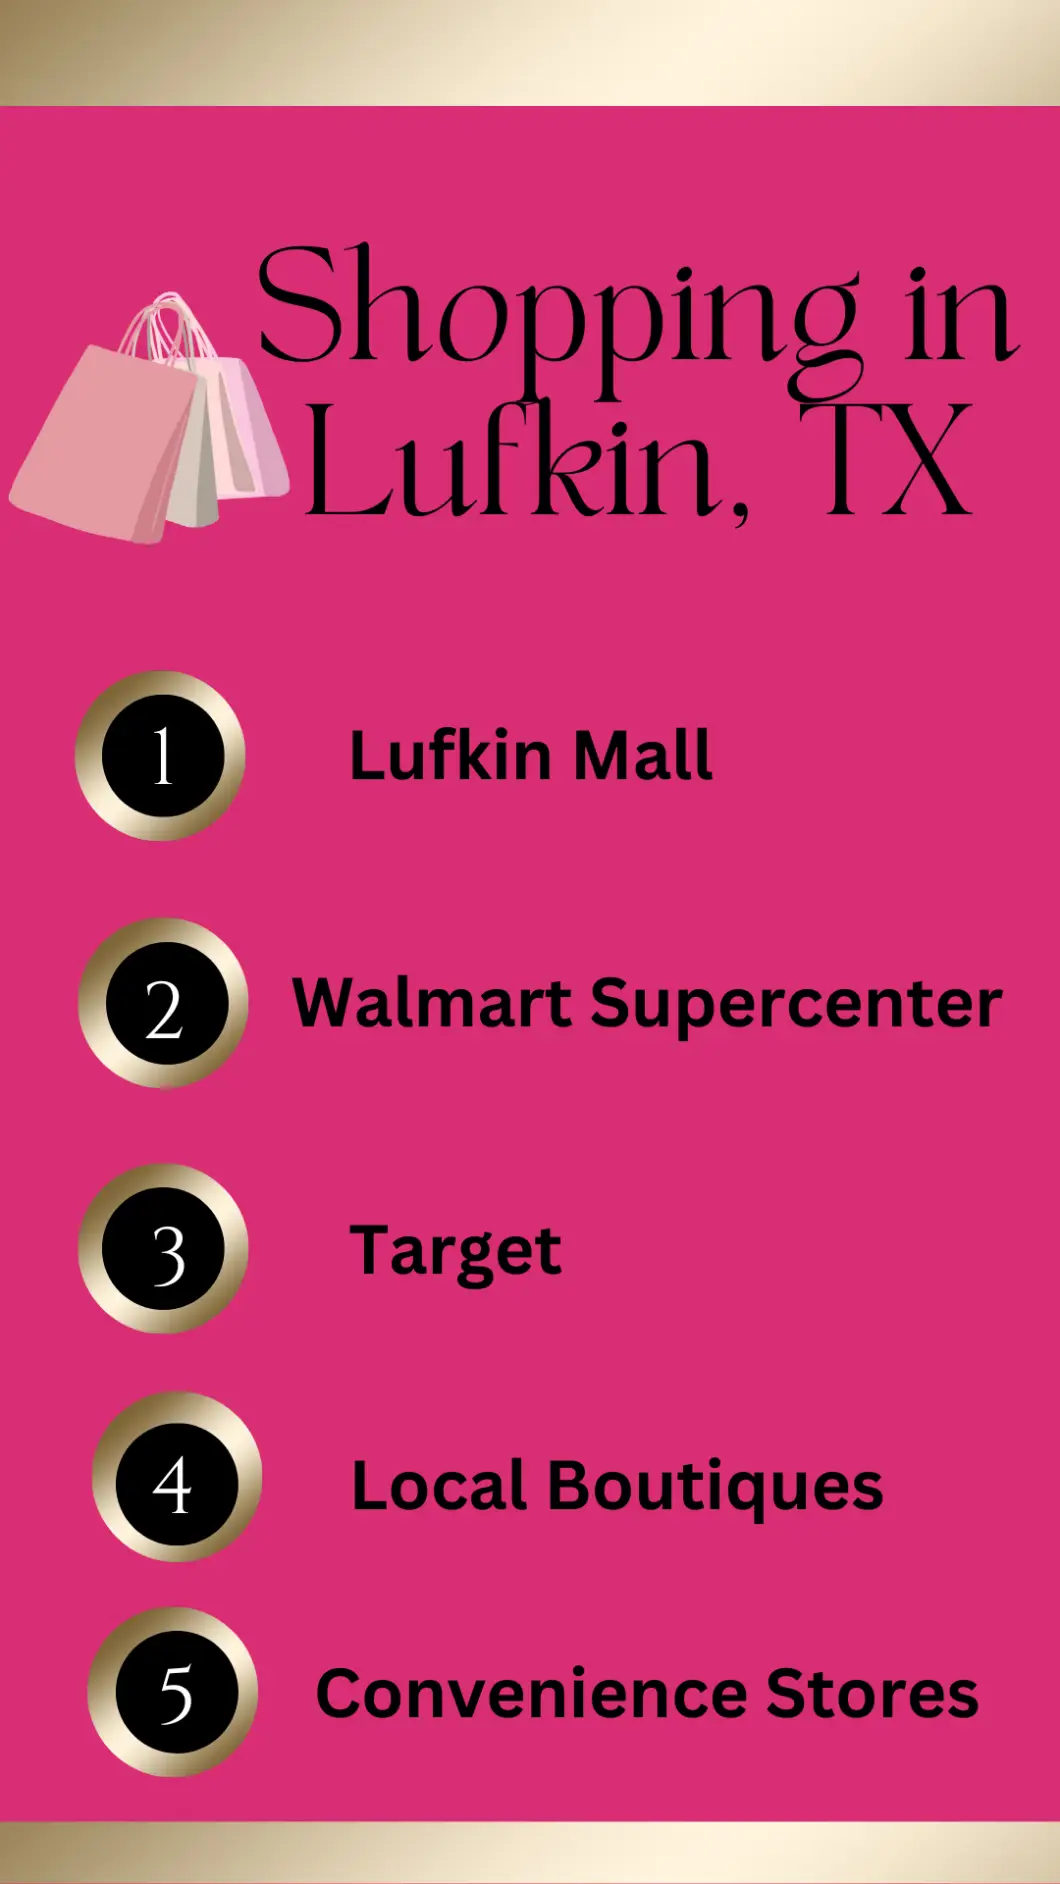 Shopping in Lufkin TX